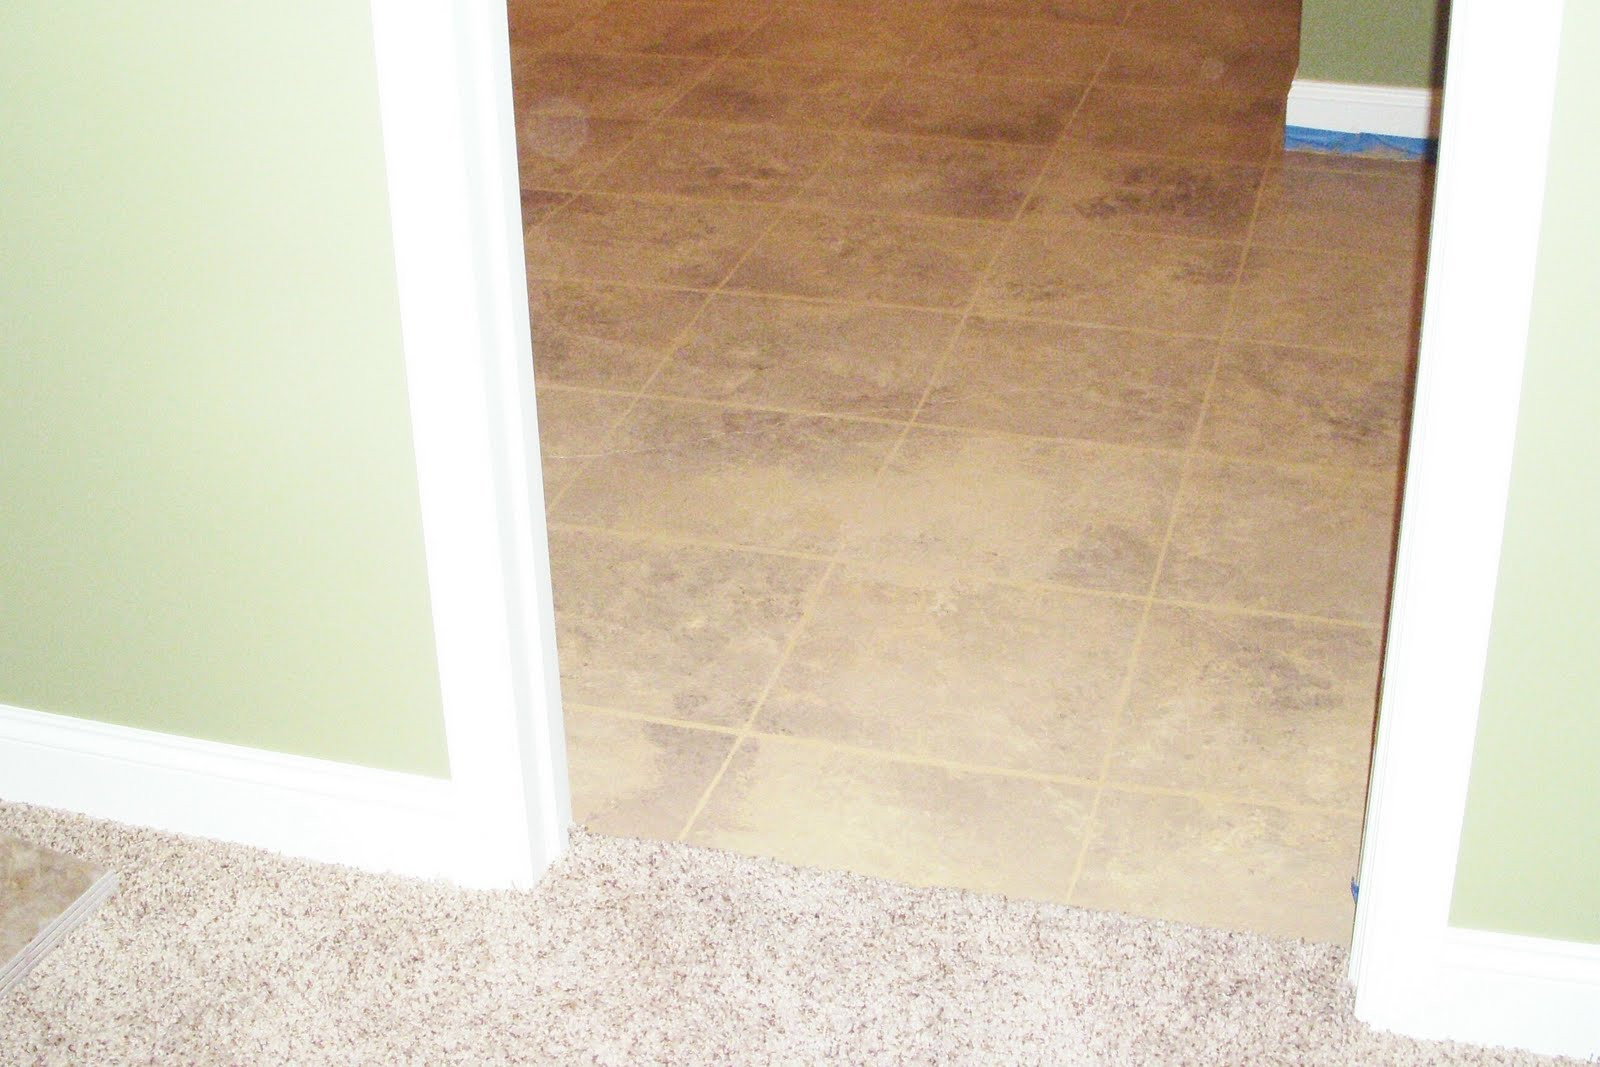 Best ideas about DIY Floor Tile
. Save or Pin Hope Studios Painted Floor Tiles DIY Now.